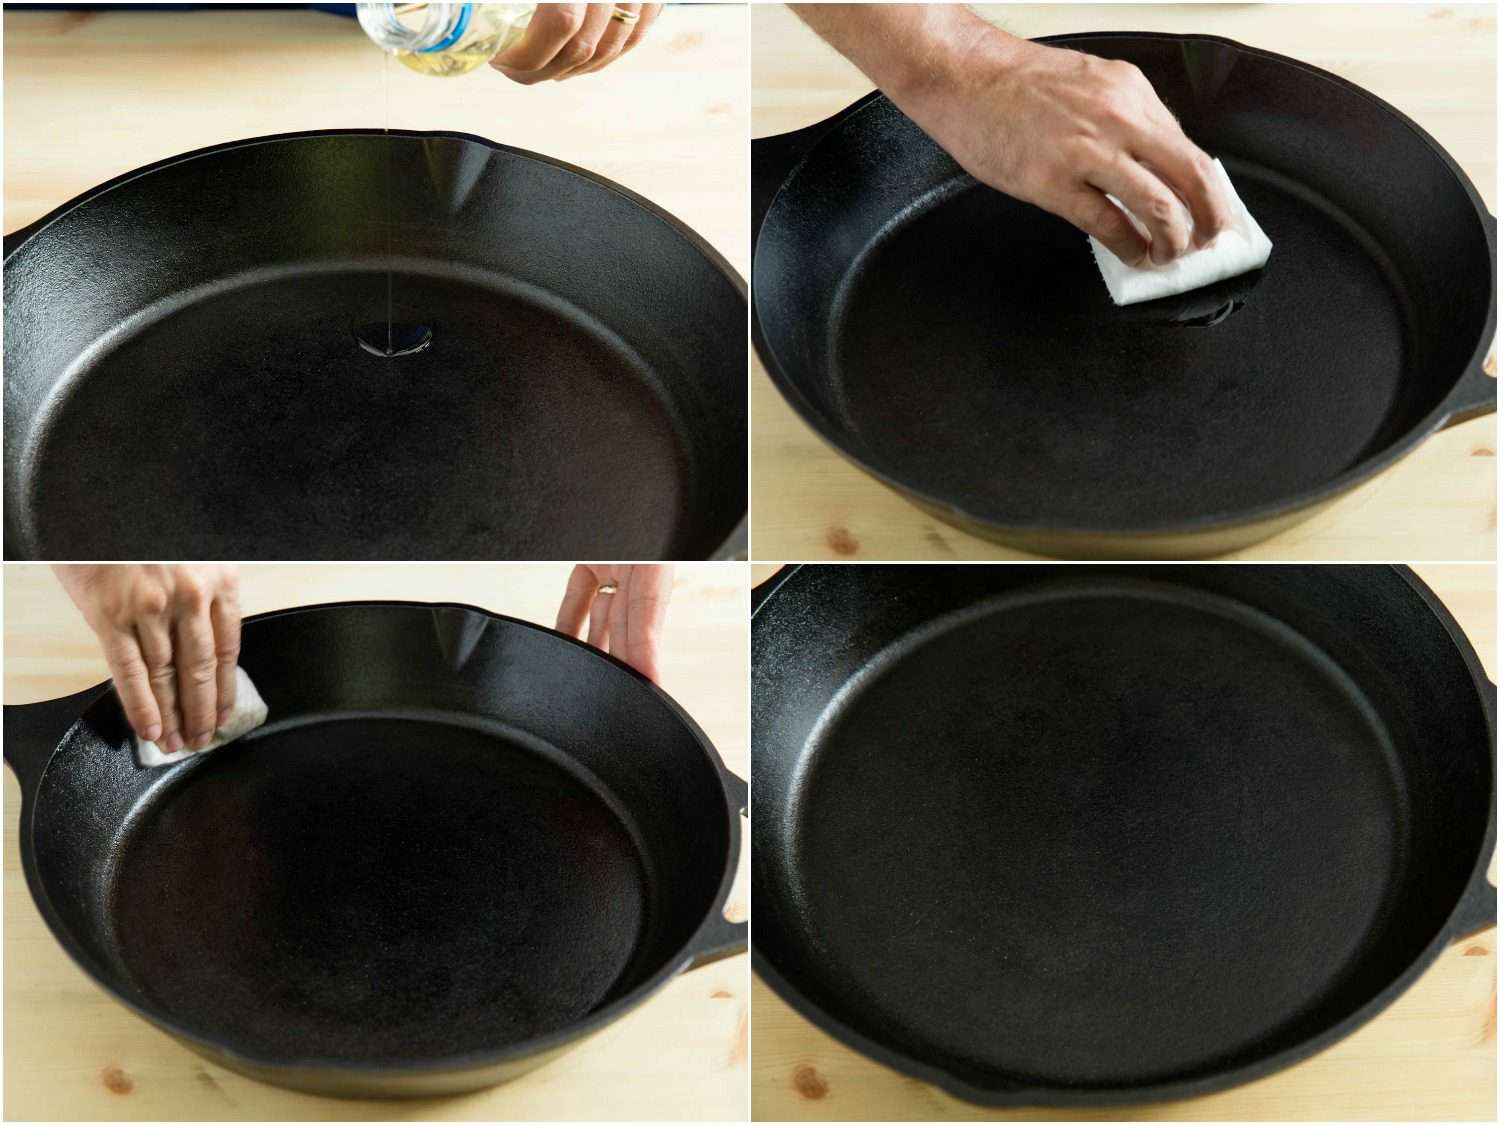 照片拼贴显示了在铸铁锅上擦油的四个阶段。